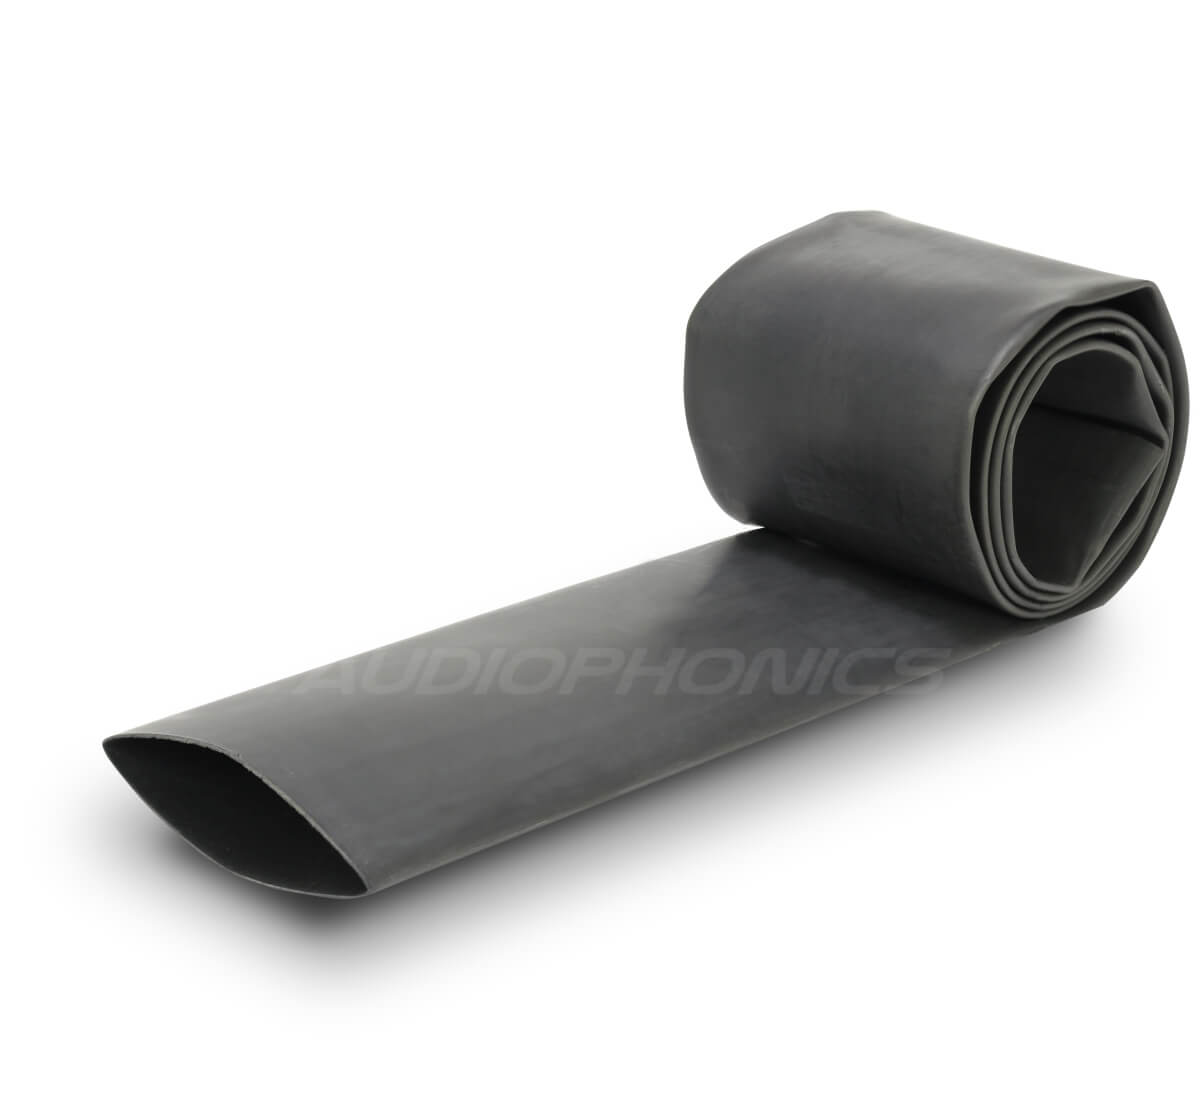 Heat-shrink tubing 3:1 Ø7.9mm Black (1m)